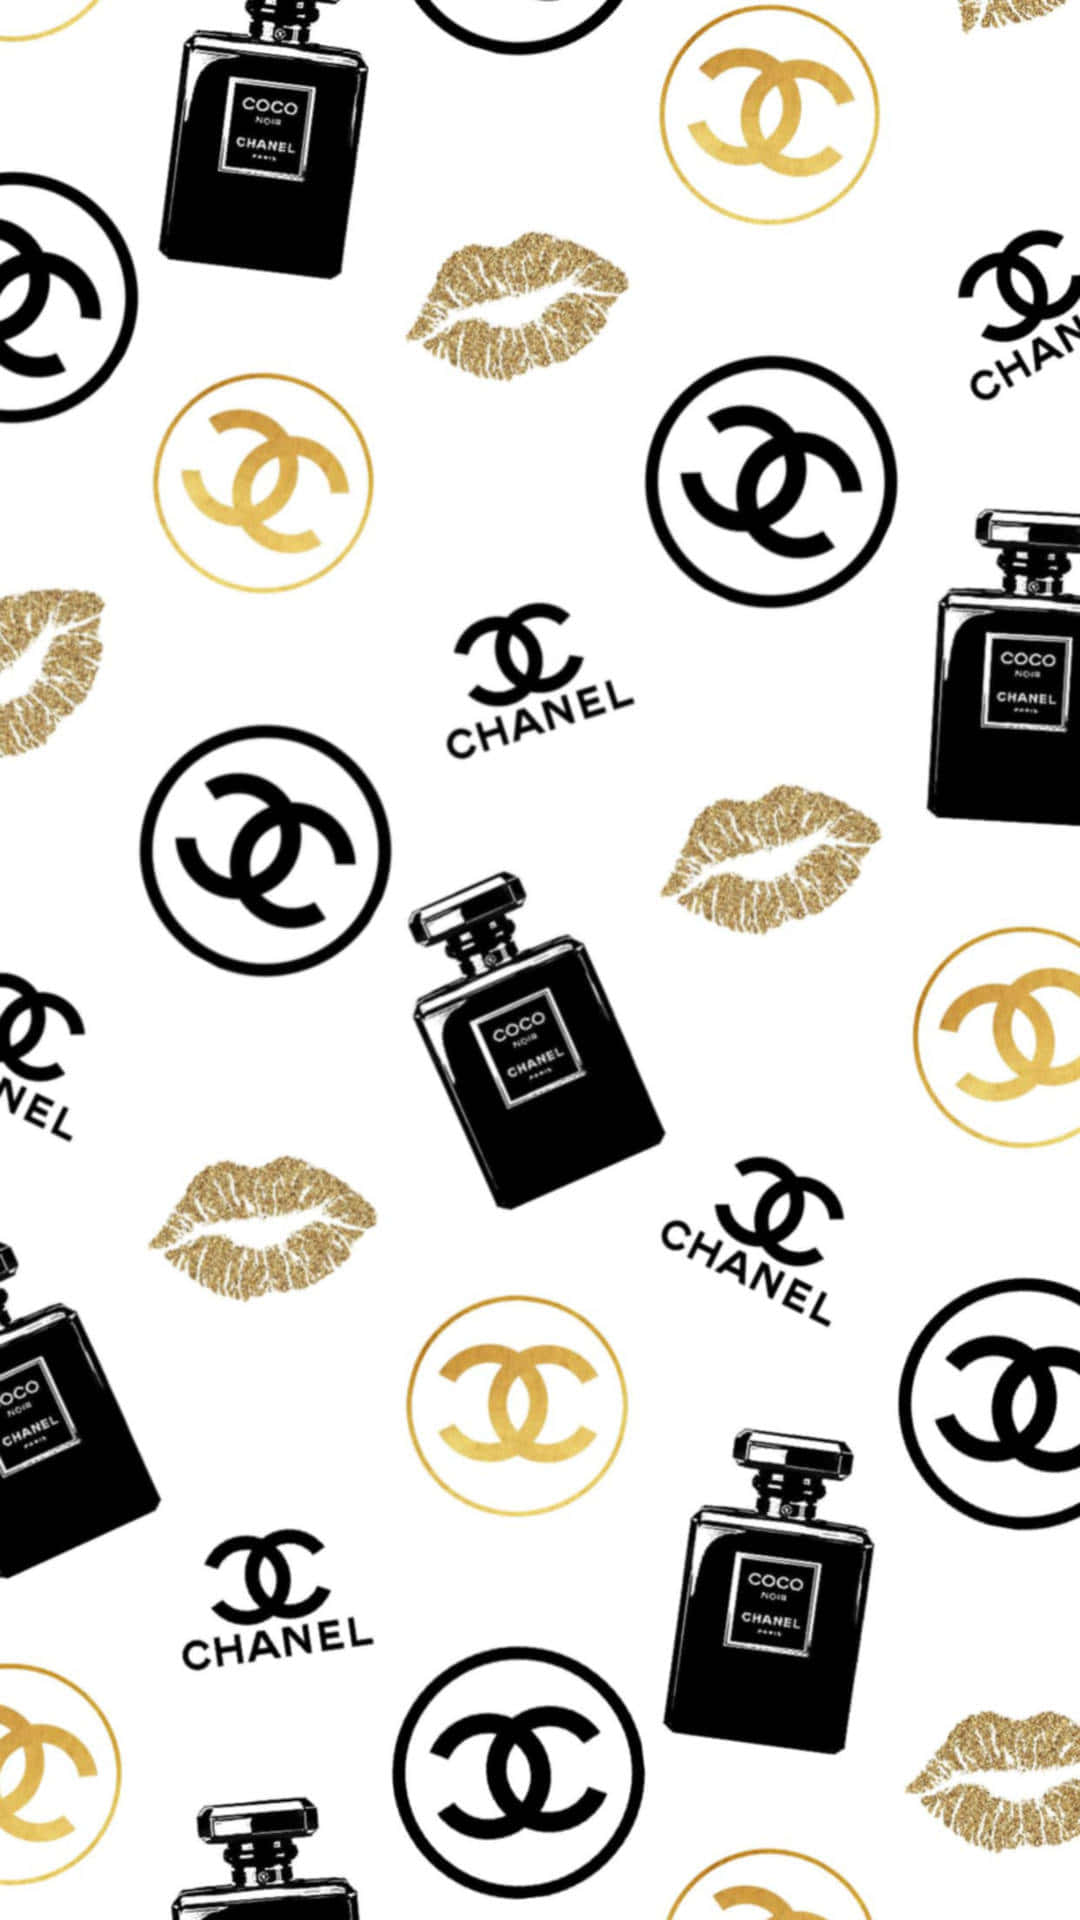 Descubreel Mundo Del Lujo Y La Sofisticación Atemporal Con Chanel.